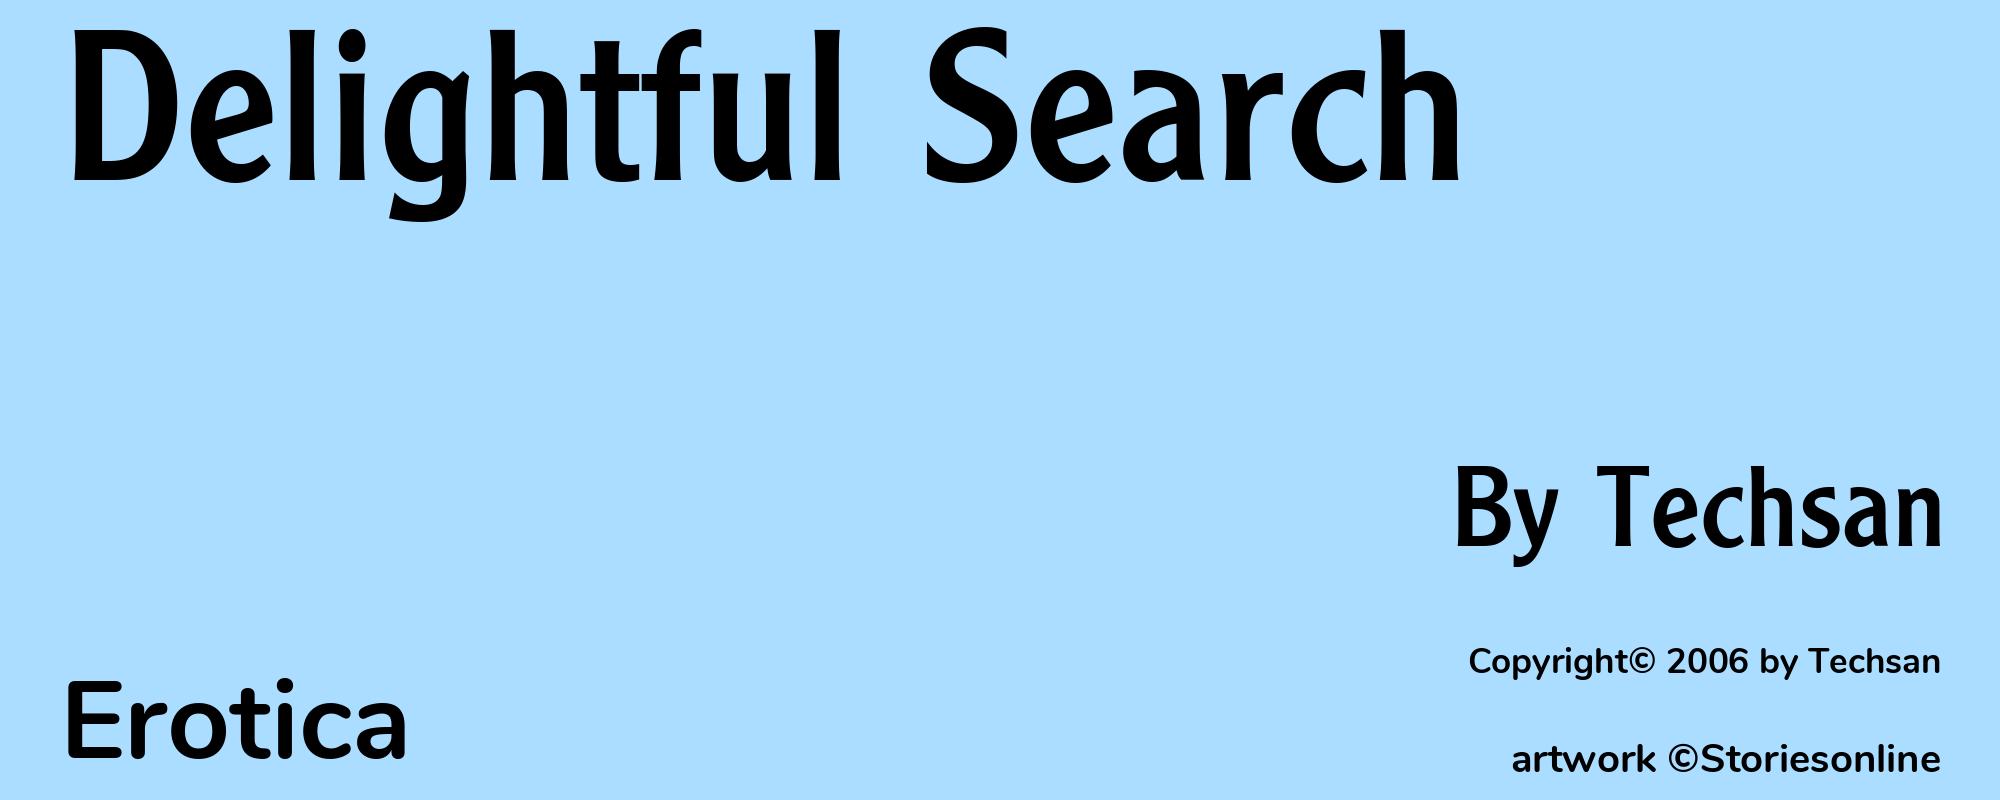 Delightful Search - Cover